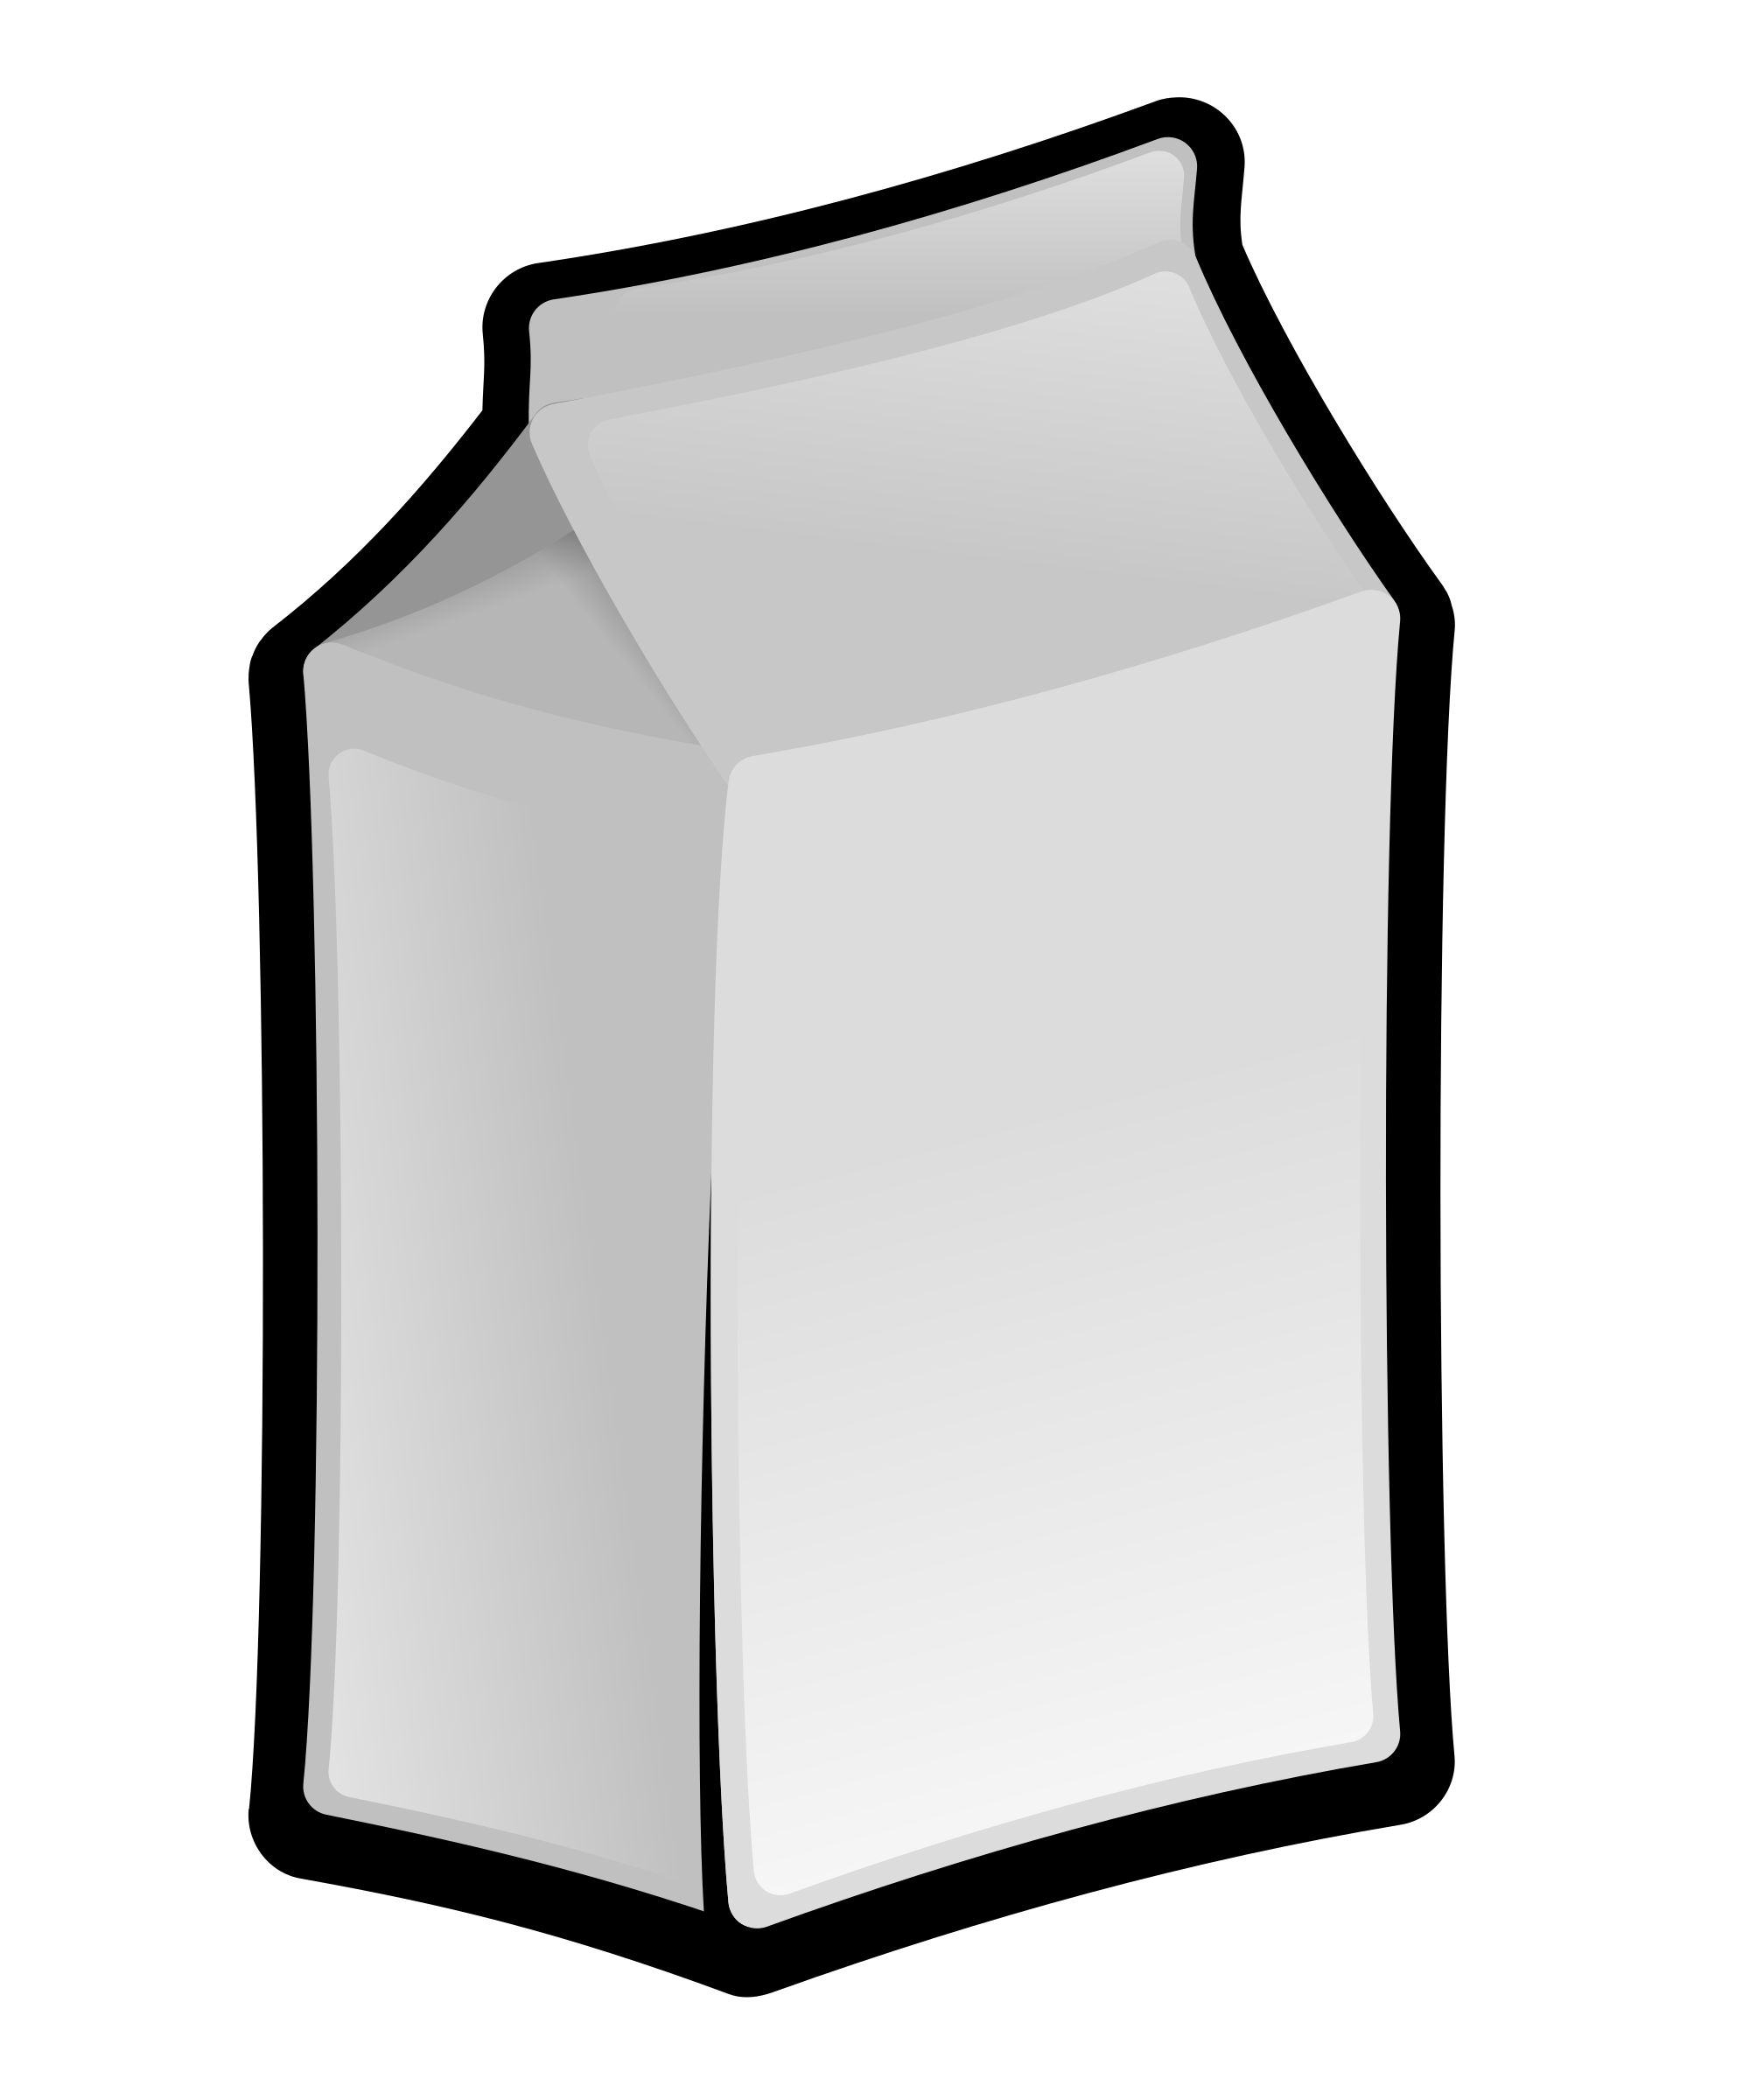 Milk Box By Jonata